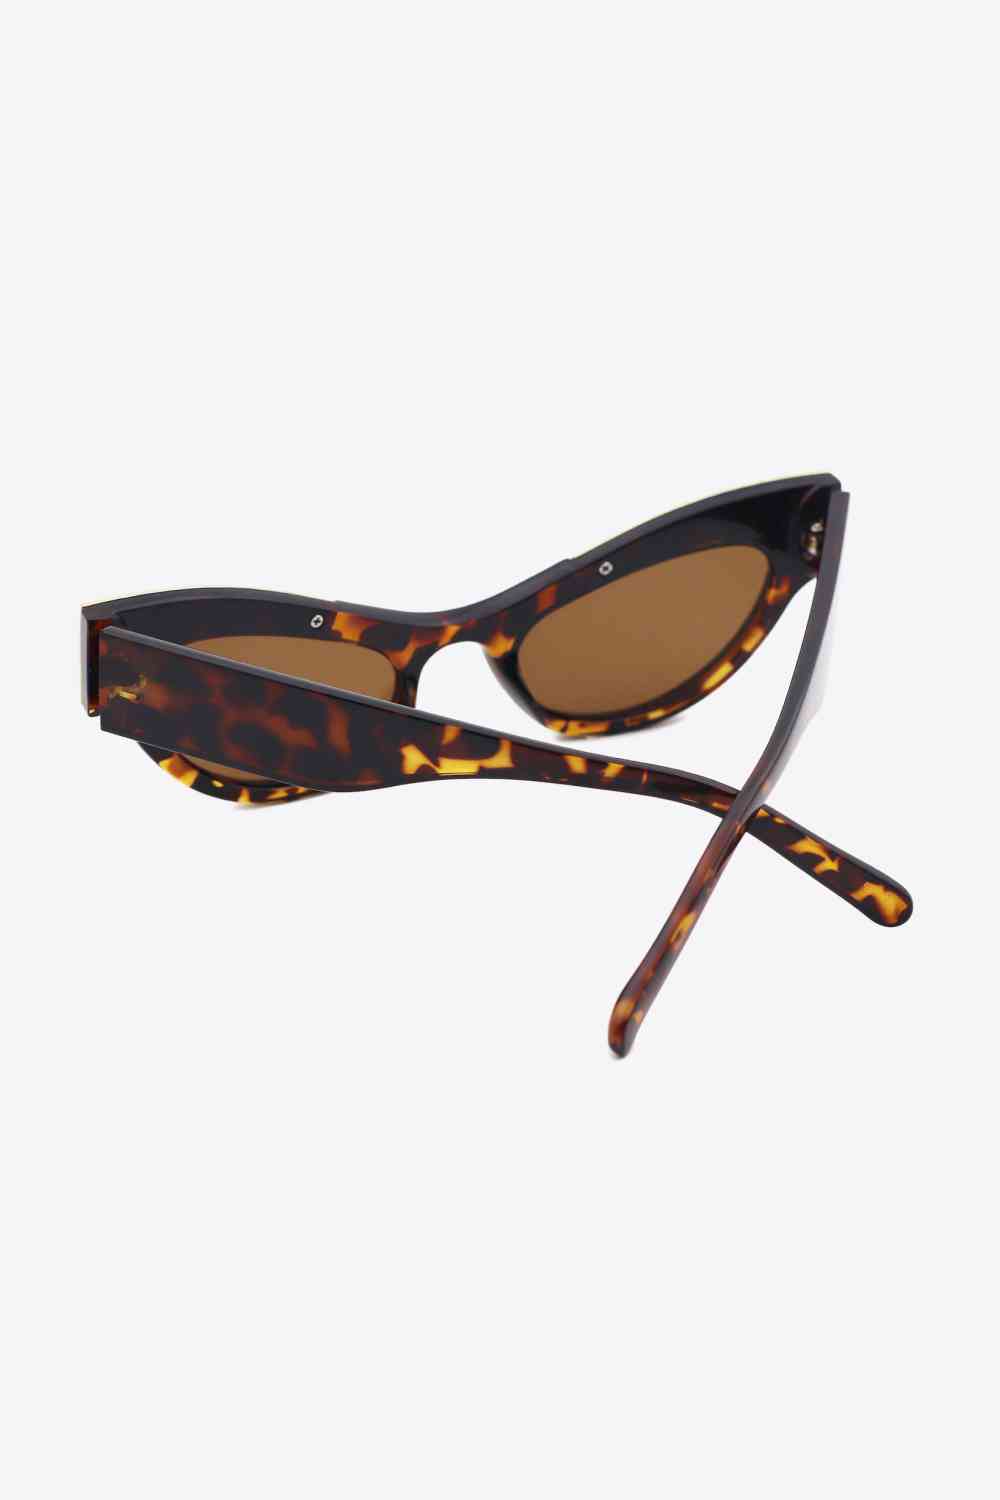 TEEK - Regal Rhinestone Trim Cat-Eye Sunglasses EYEGLASSES TEEK Trend   